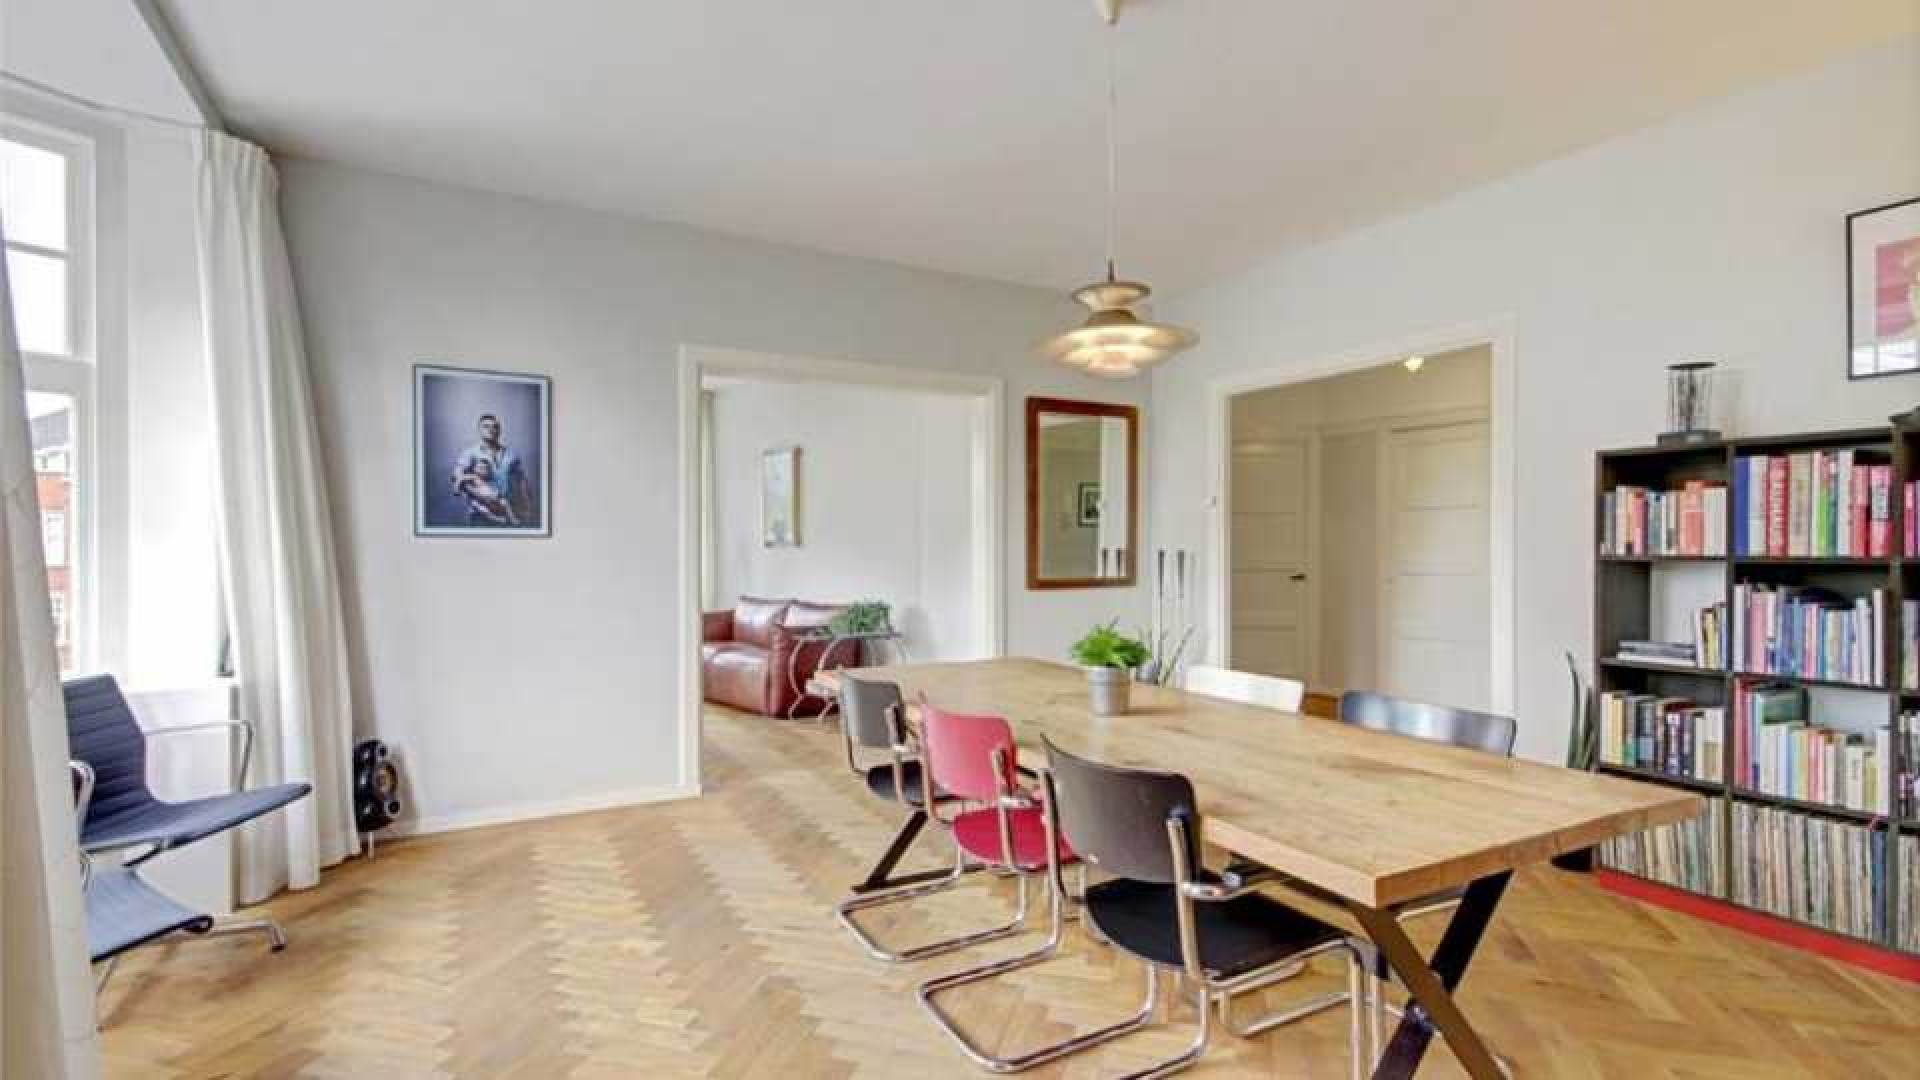 Flikken Maastricht acteur Victor Reinier koopt luxe appartement in Amsterdam Zuid. Zie foto's 3